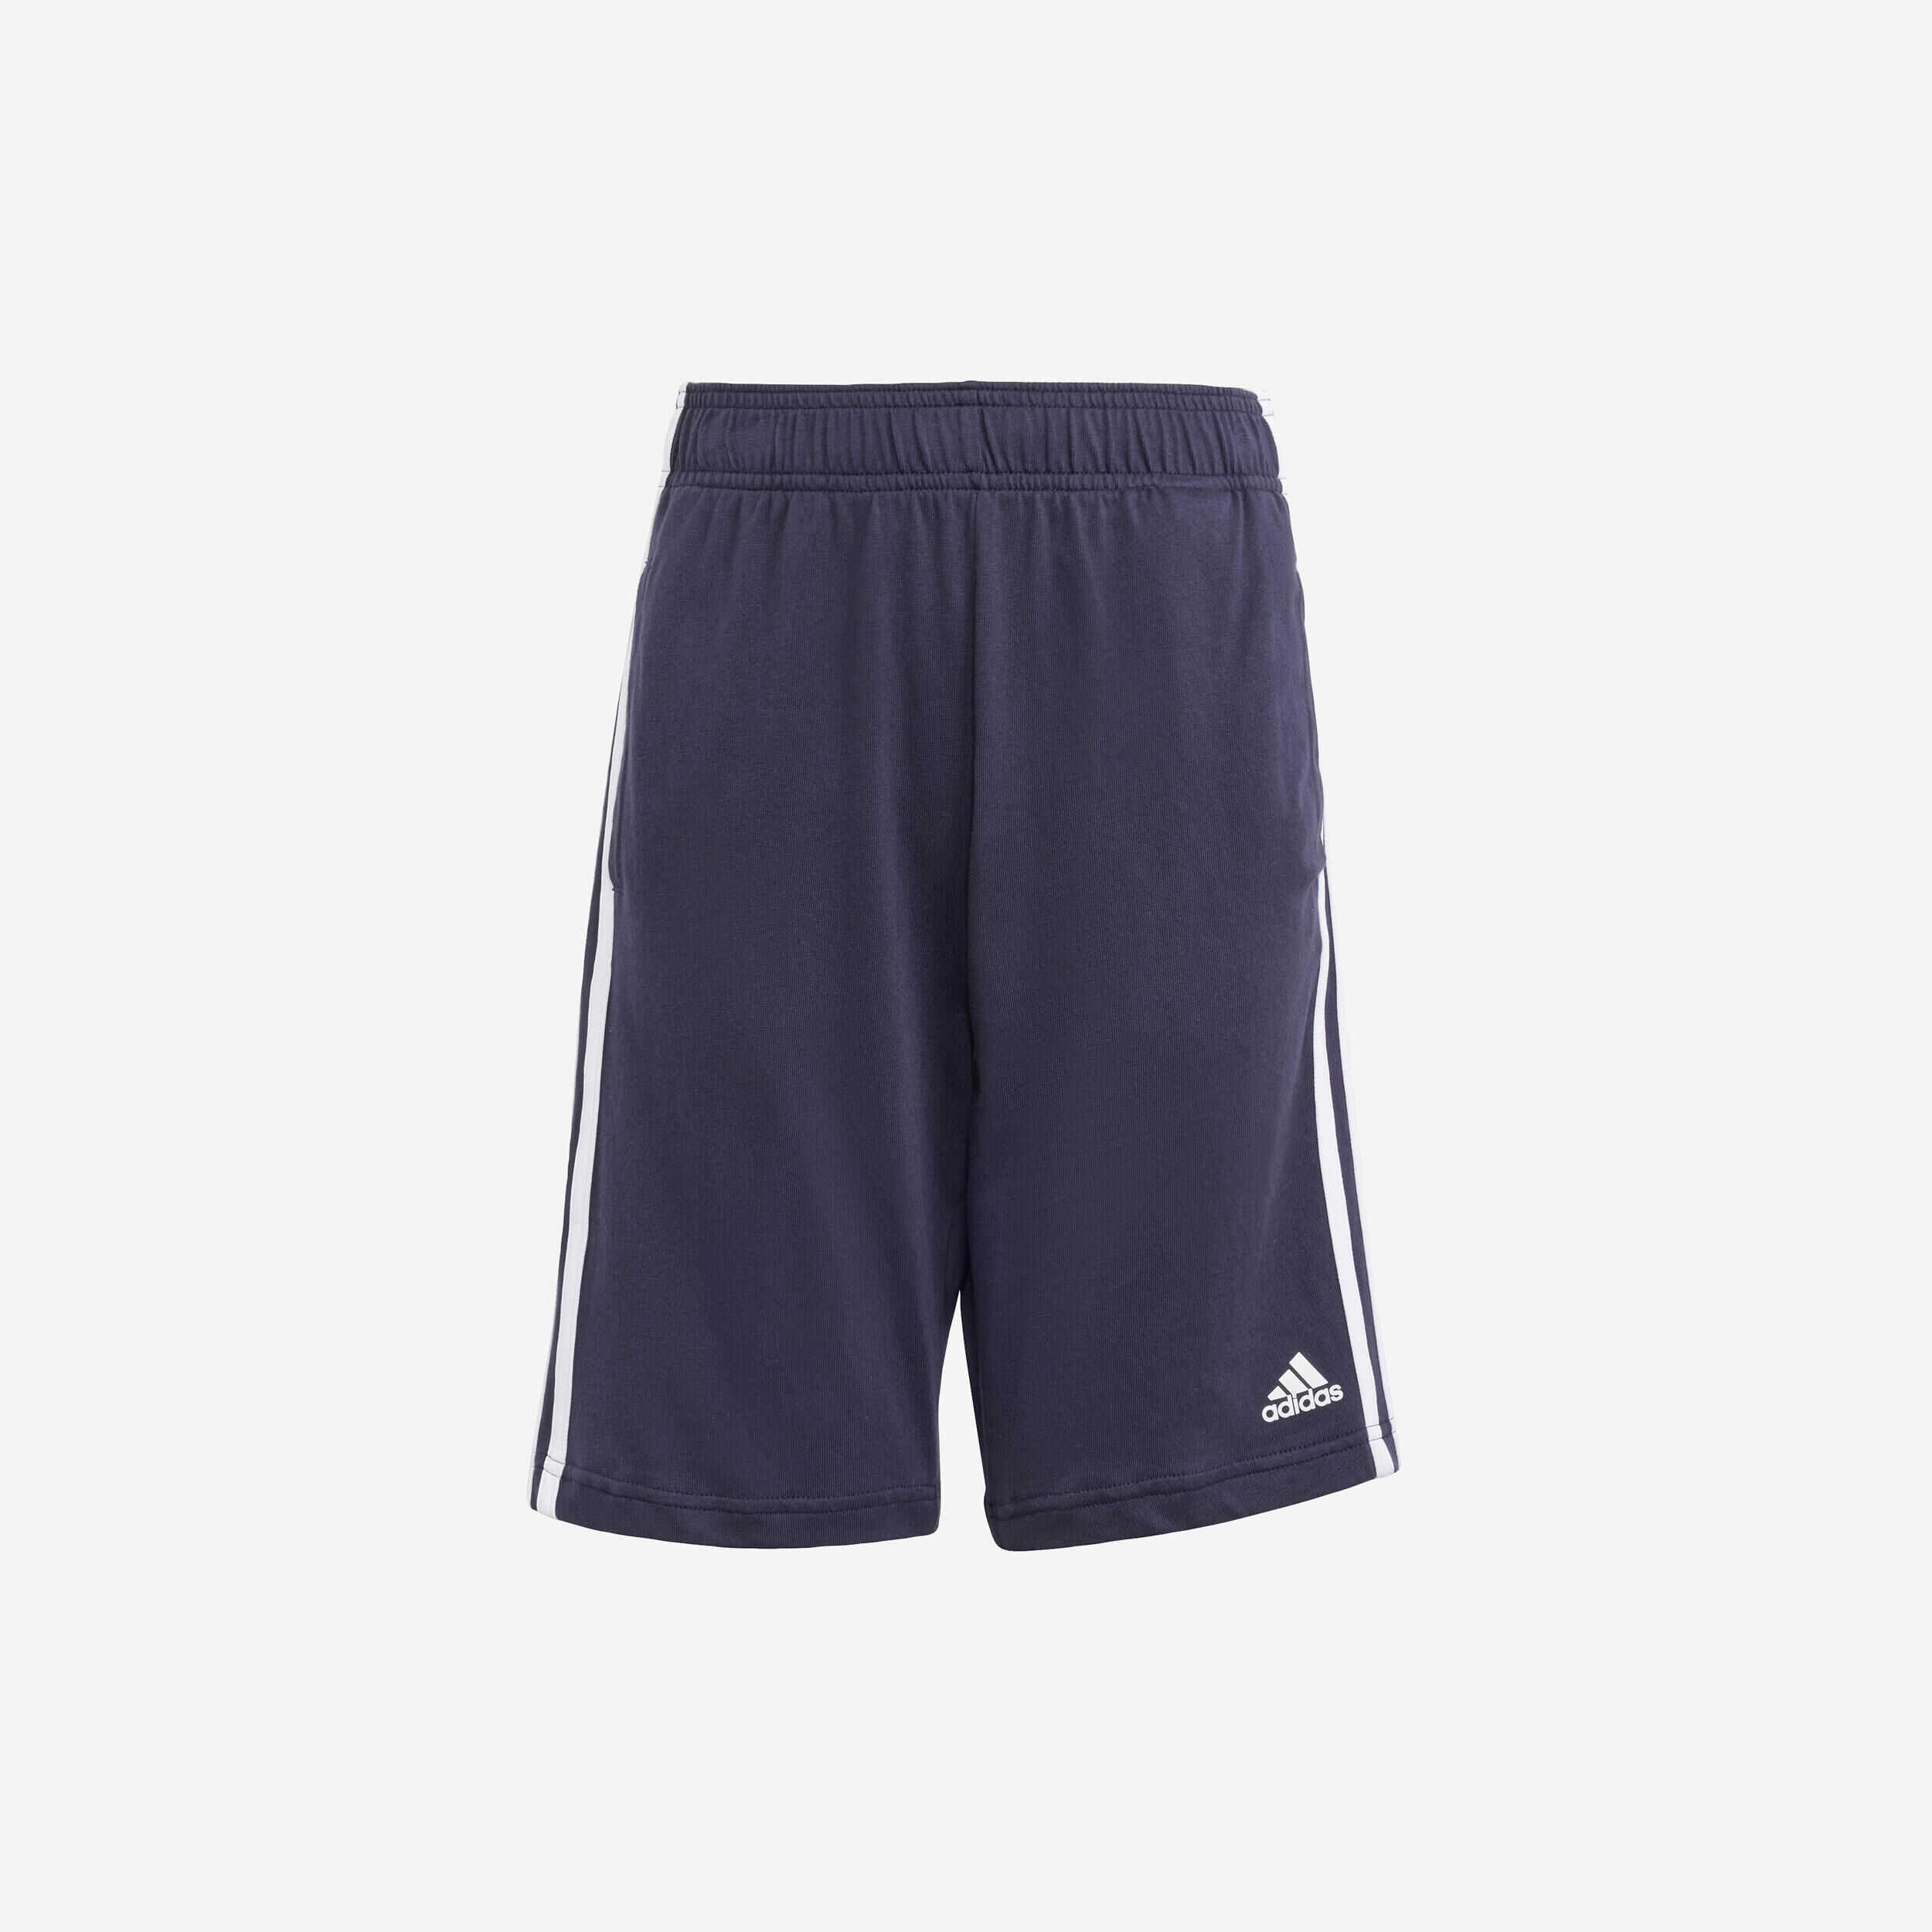 ADIDAS Long Shorts - Navy